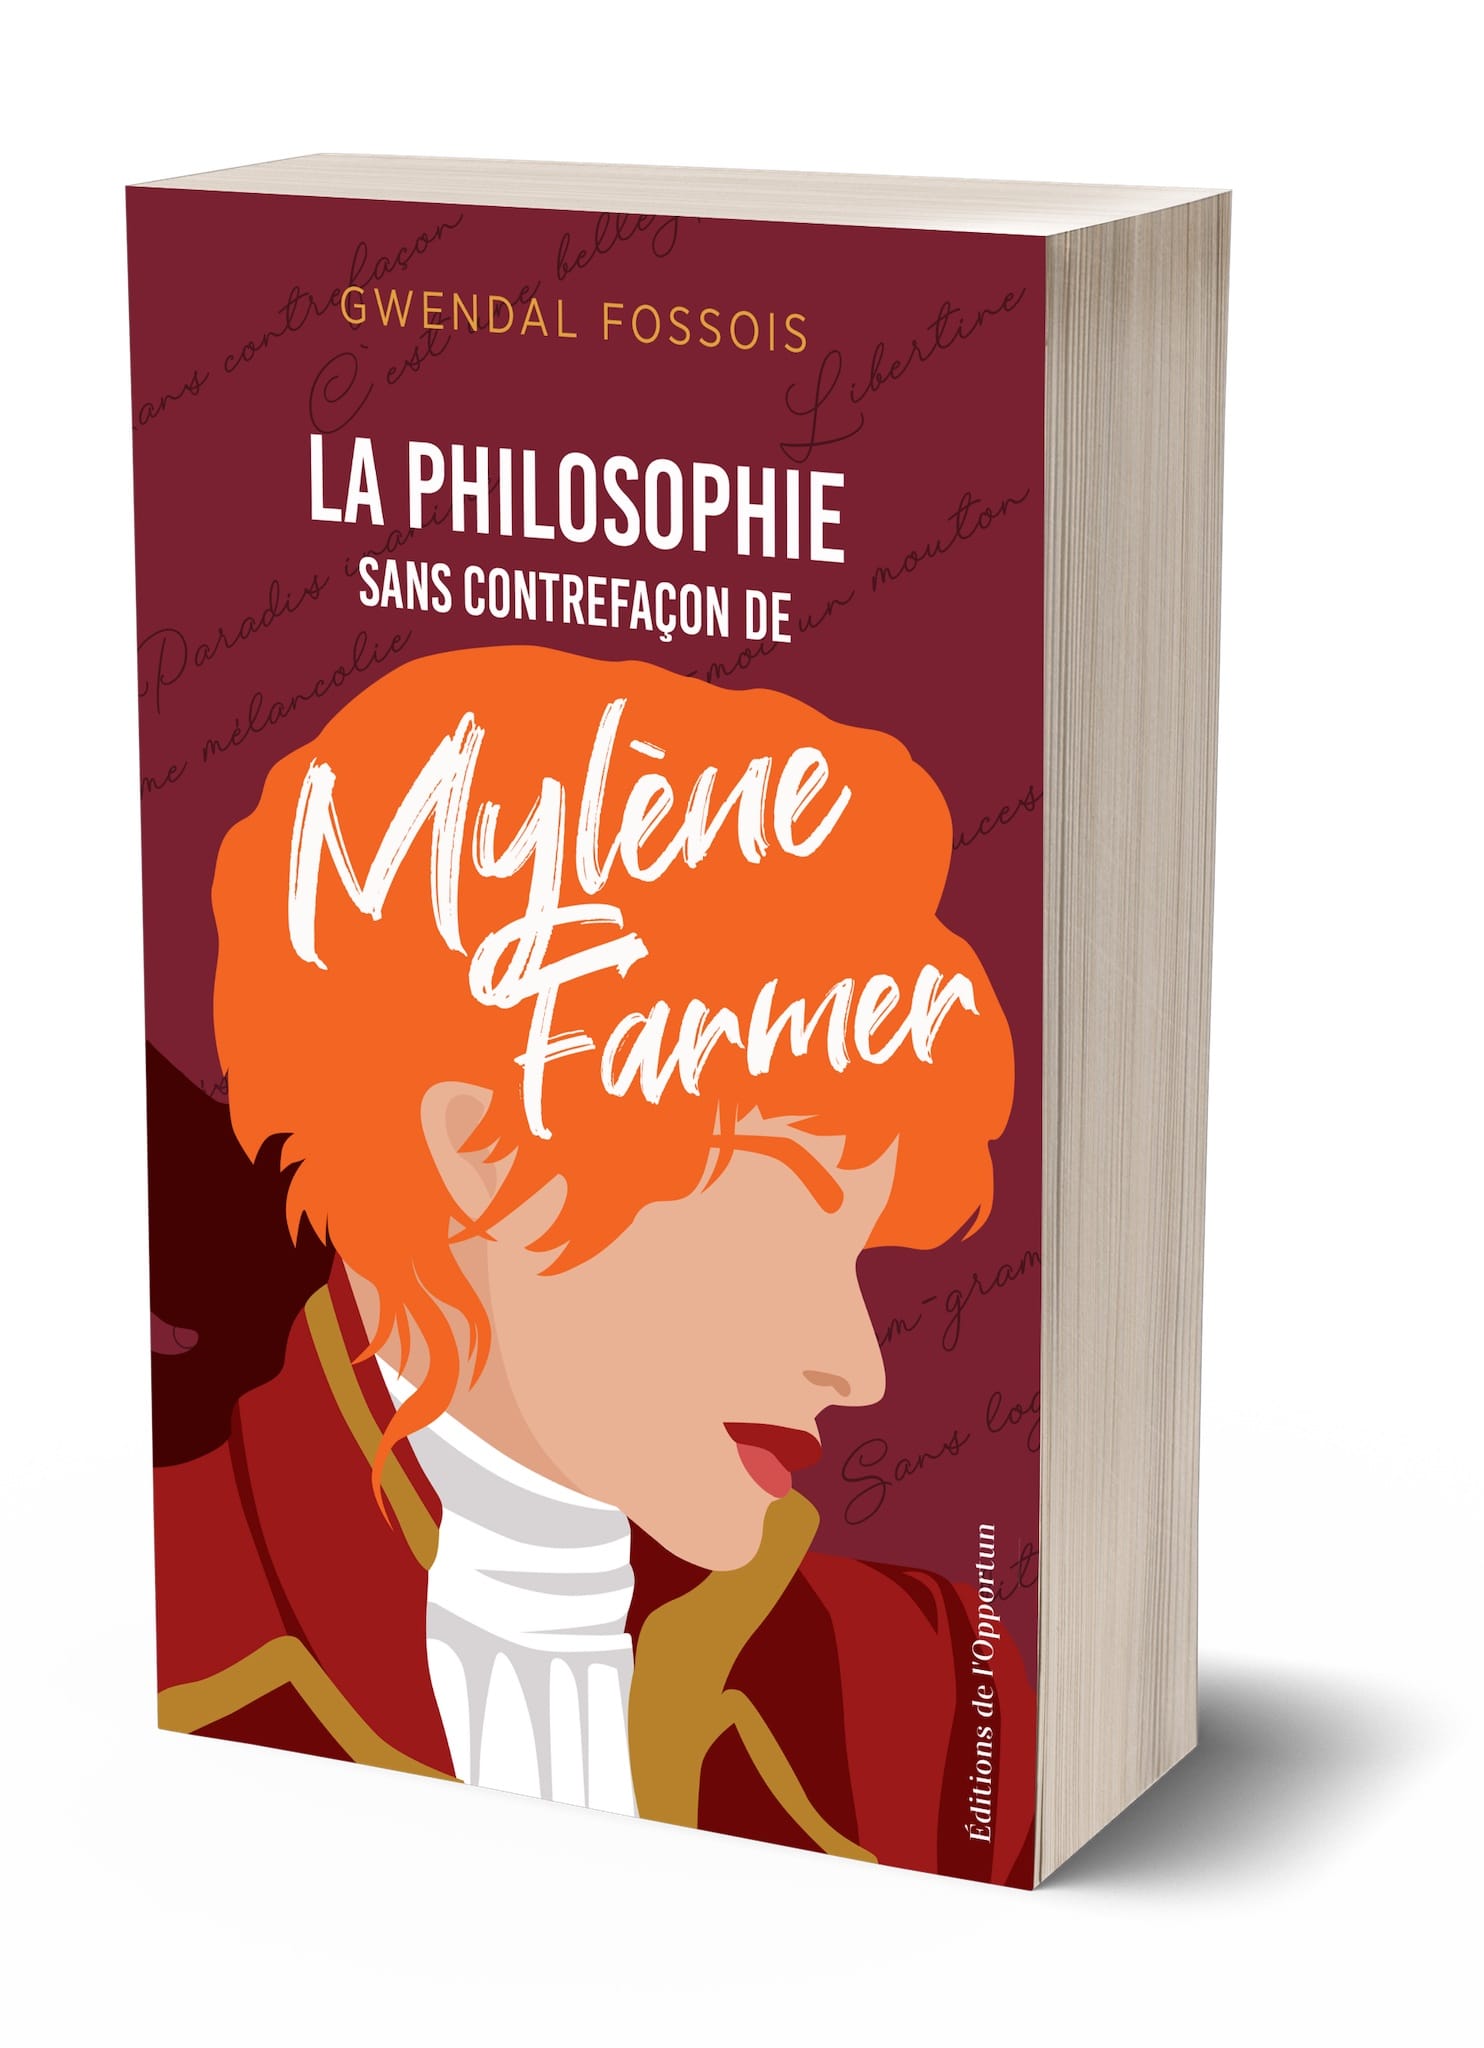 La philosophie sans contrefaçon de Mylène Farmer de Gwendal Fossois image couverture du livre